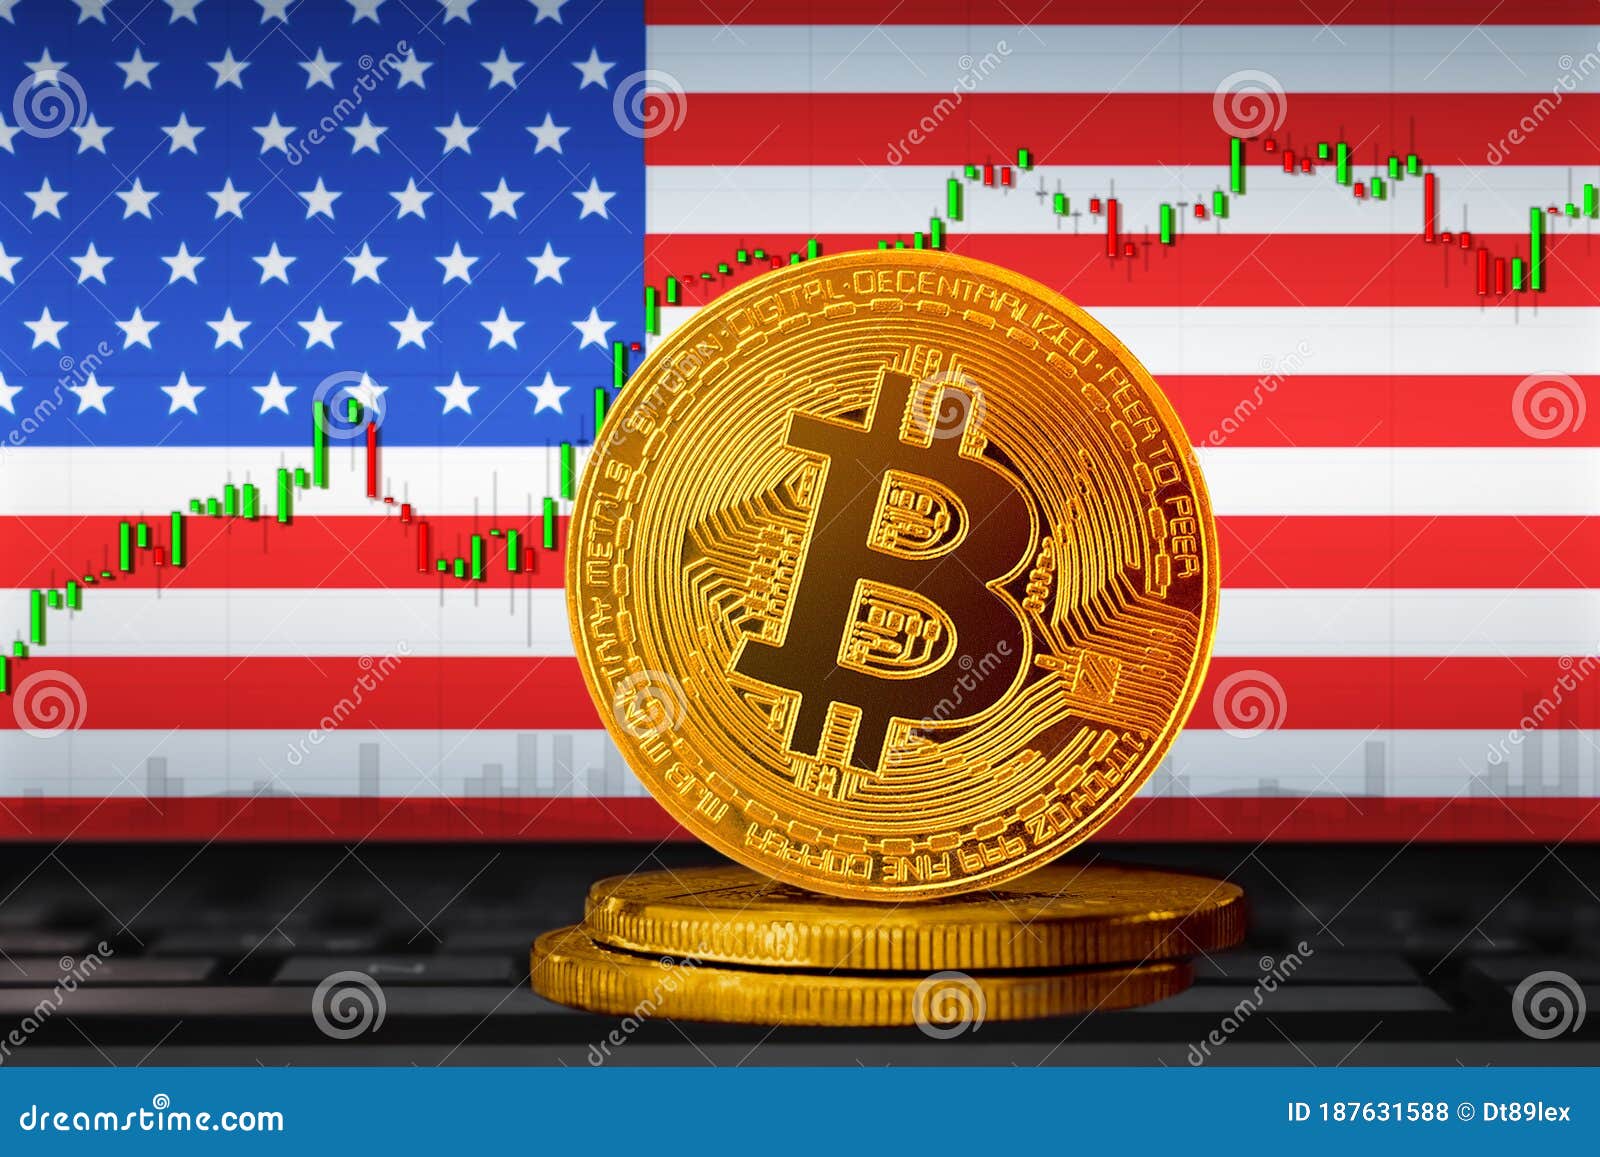 Биткоин и американский флаг как купить биткоин в россии через сбербанк 2021